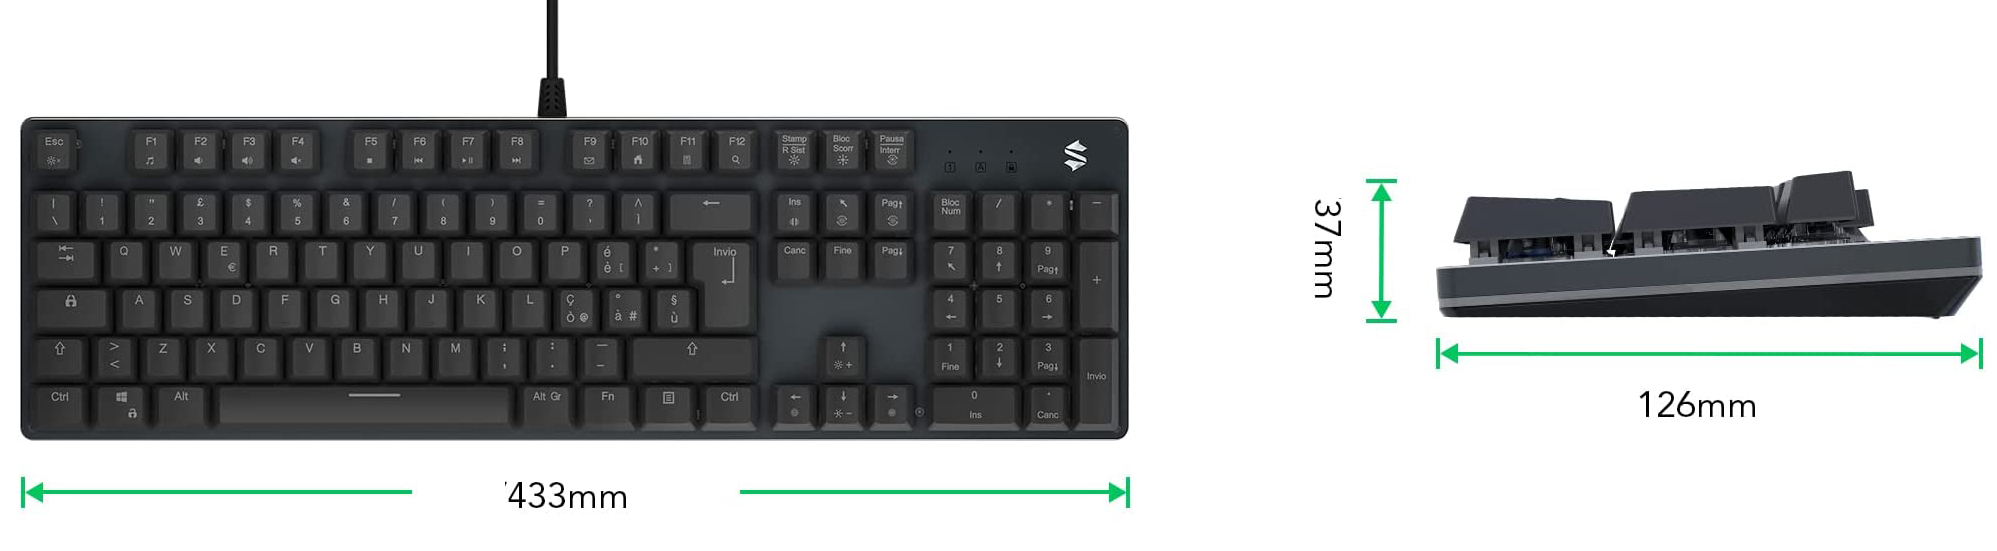 Sixgill K2, una tastiera meccanica per il gioco